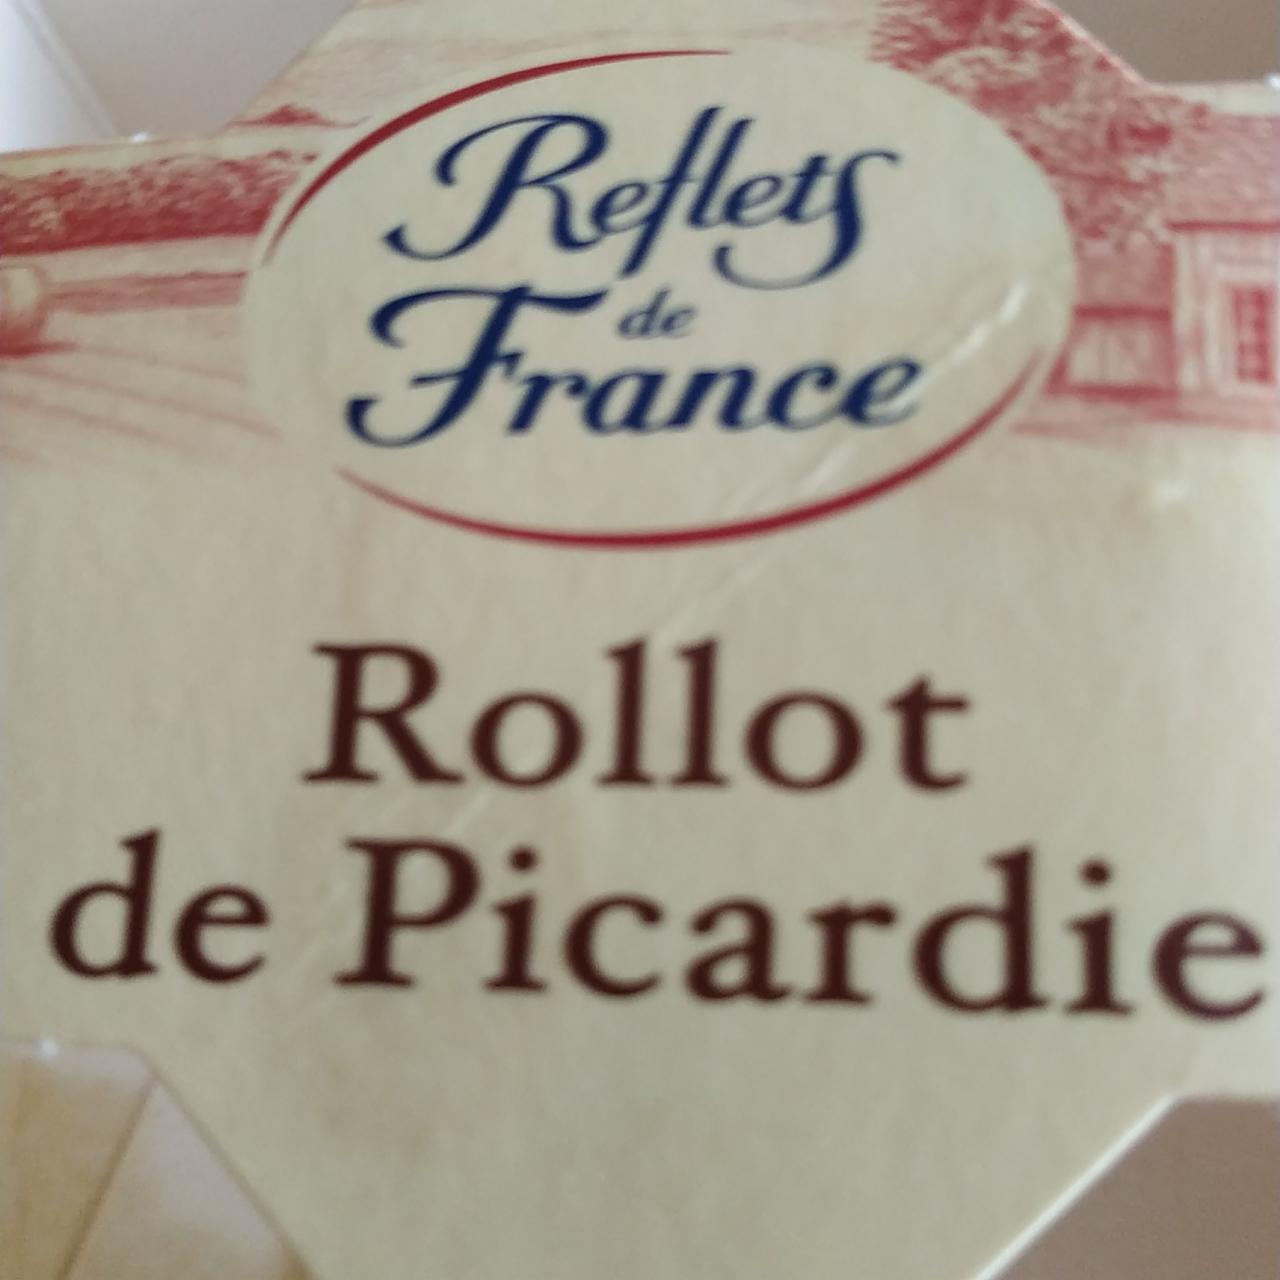 Fotografie - Rollot de Picardie Reflets de France